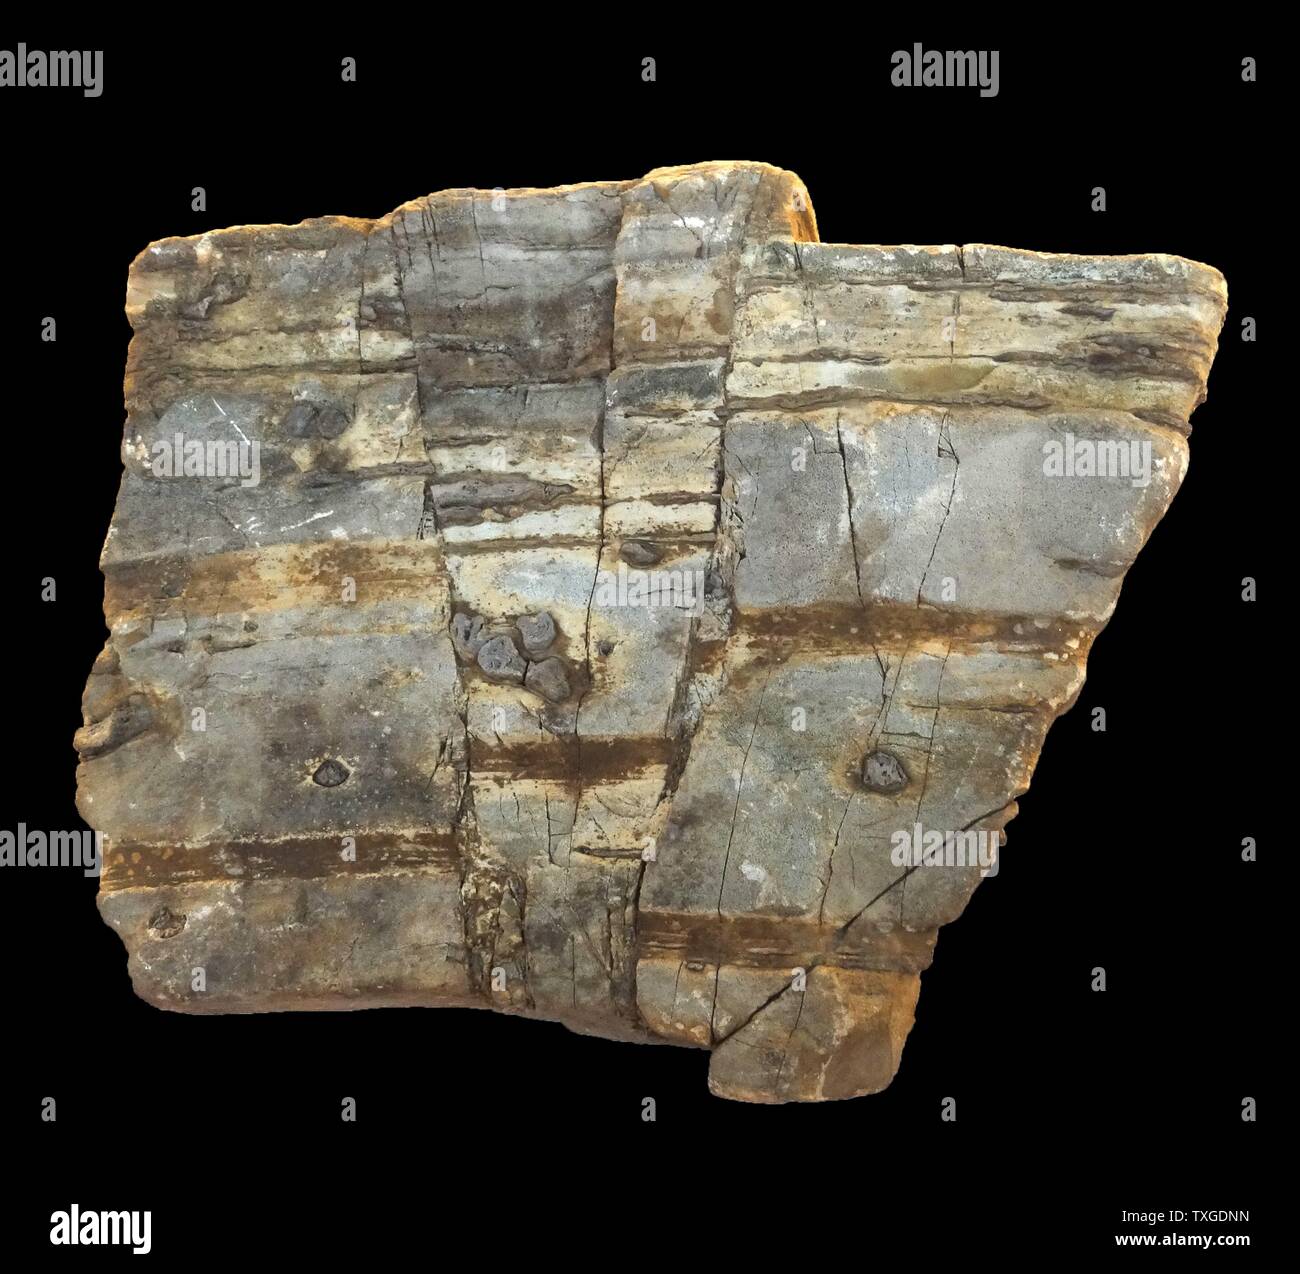 Problème rock est un planar fracture ou discontinuité dans un volume de roche, à travers lesquels il y a eu déplacement significatif à la suite de mouvement de masse de roche Banque D'Images